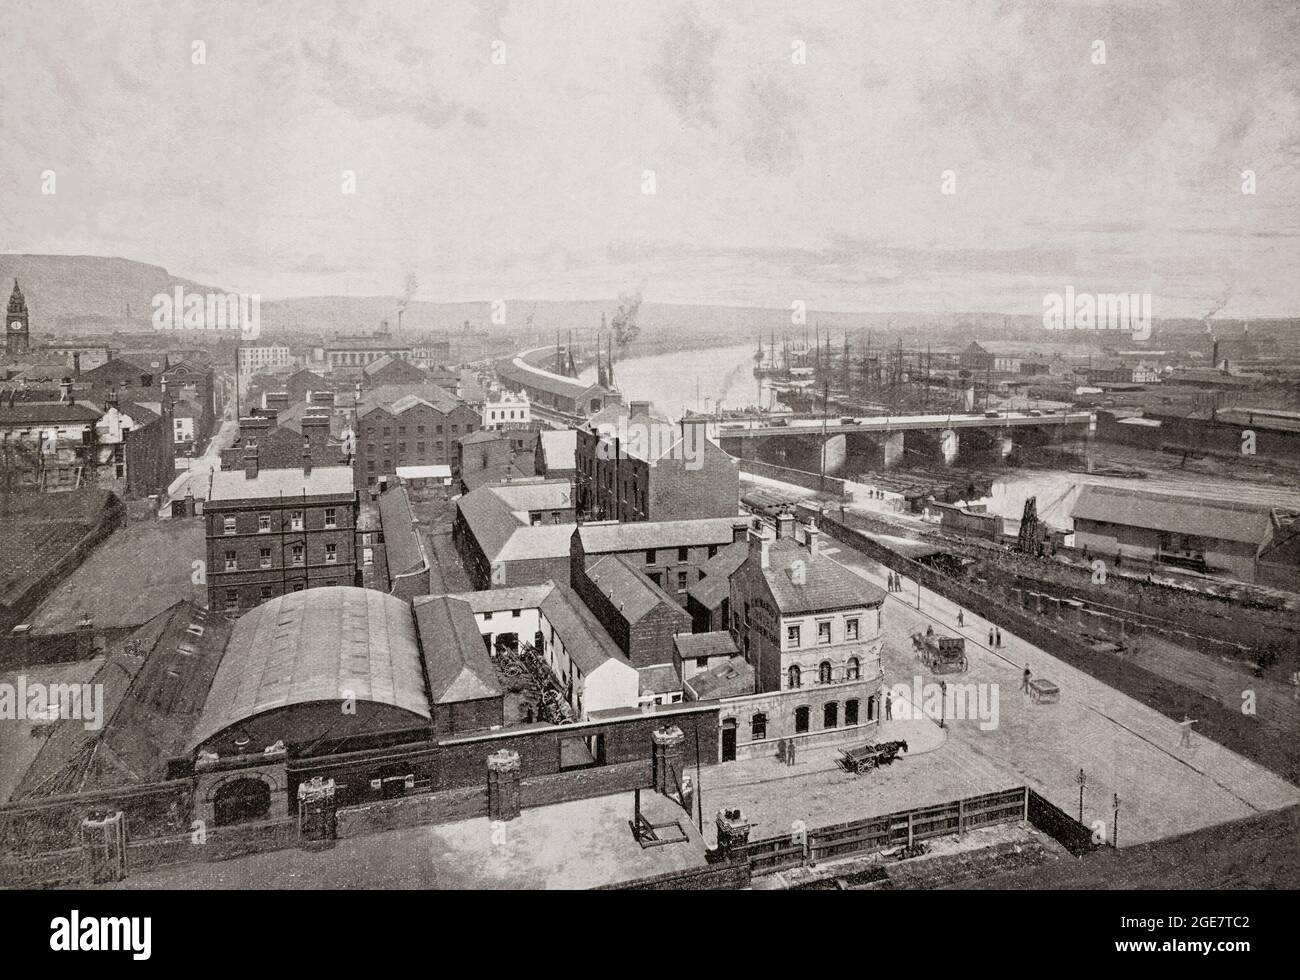 Il terzo di tre viste panoramiche della fine del XIX secolo di Belfast, la capitale e la più grande città dell'Irlanda del Nord, sulle rive del fiume Lagan sulla costa orientale. Belfast è stato un porto importante che ha svolto un ruolo importante nella rivoluzione industriale in Irlanda, guadagnandolo il soprannome di 'Linenopolis' come centro importante della produzione irlandese di lino, della lavorazione del tabacco e della produzione di corde. La costruzione navale era anche un'industria chiave; i cantieri Harland e Wolff, che hanno costruito il Titanic RMS, erano il più grande cantiere navale del mondo e si possono vedere sul lato del fiume oltre Queens Bridge. Foto Stock